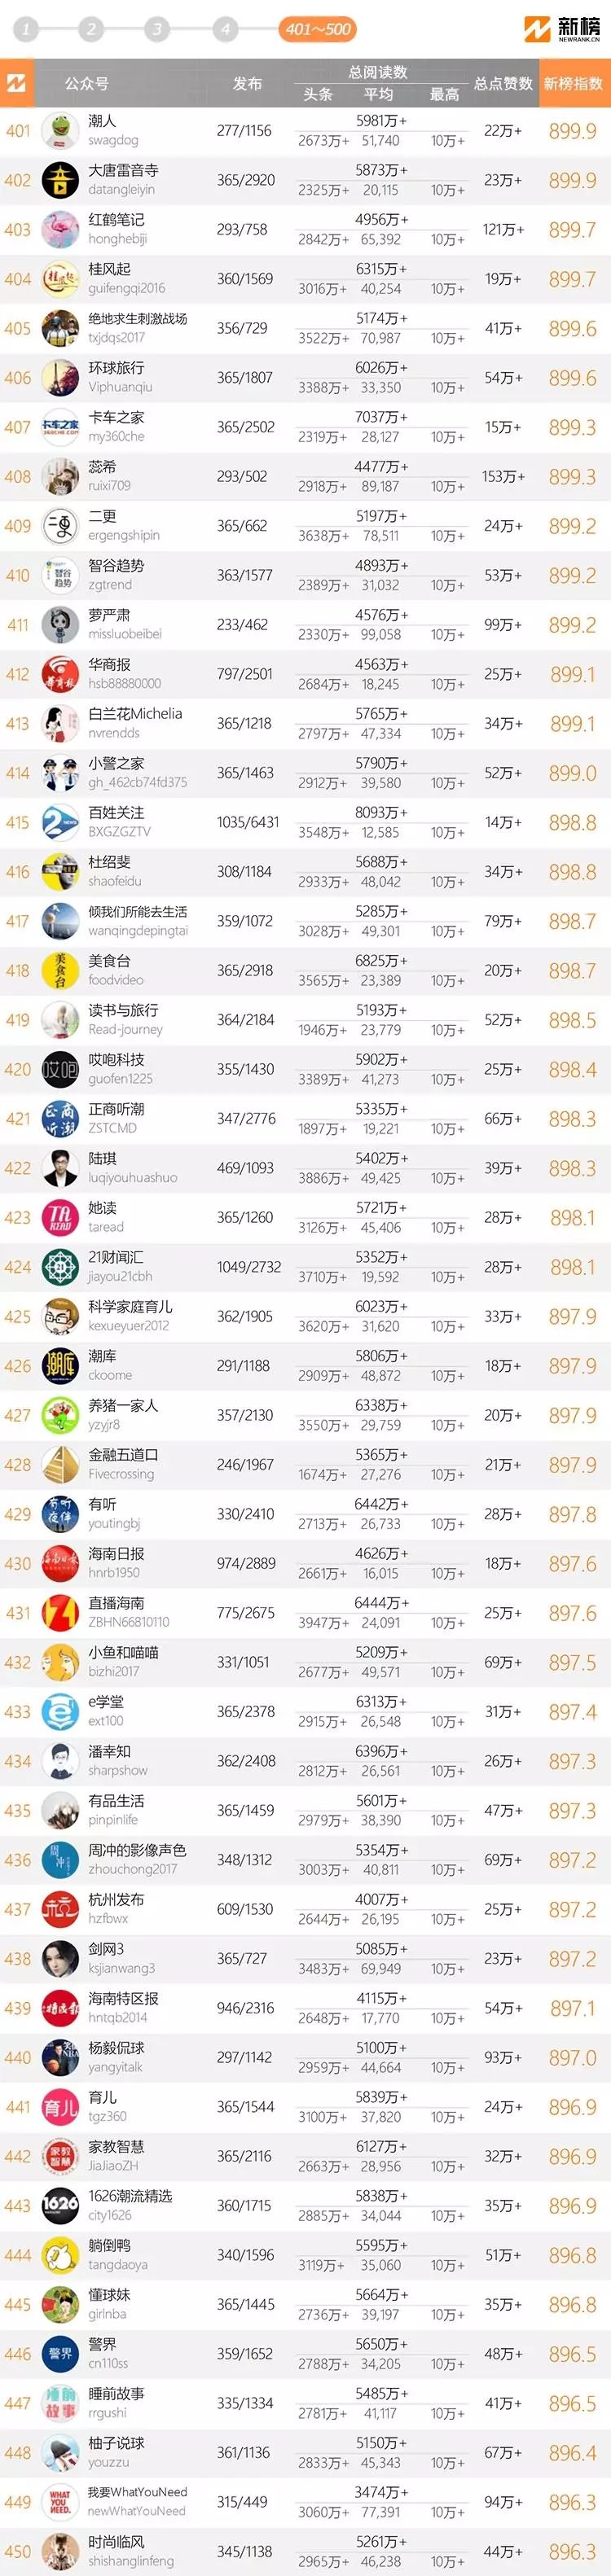 十大微信公众号排名榜-2018中国微信500强排名榜(阅读量排序)